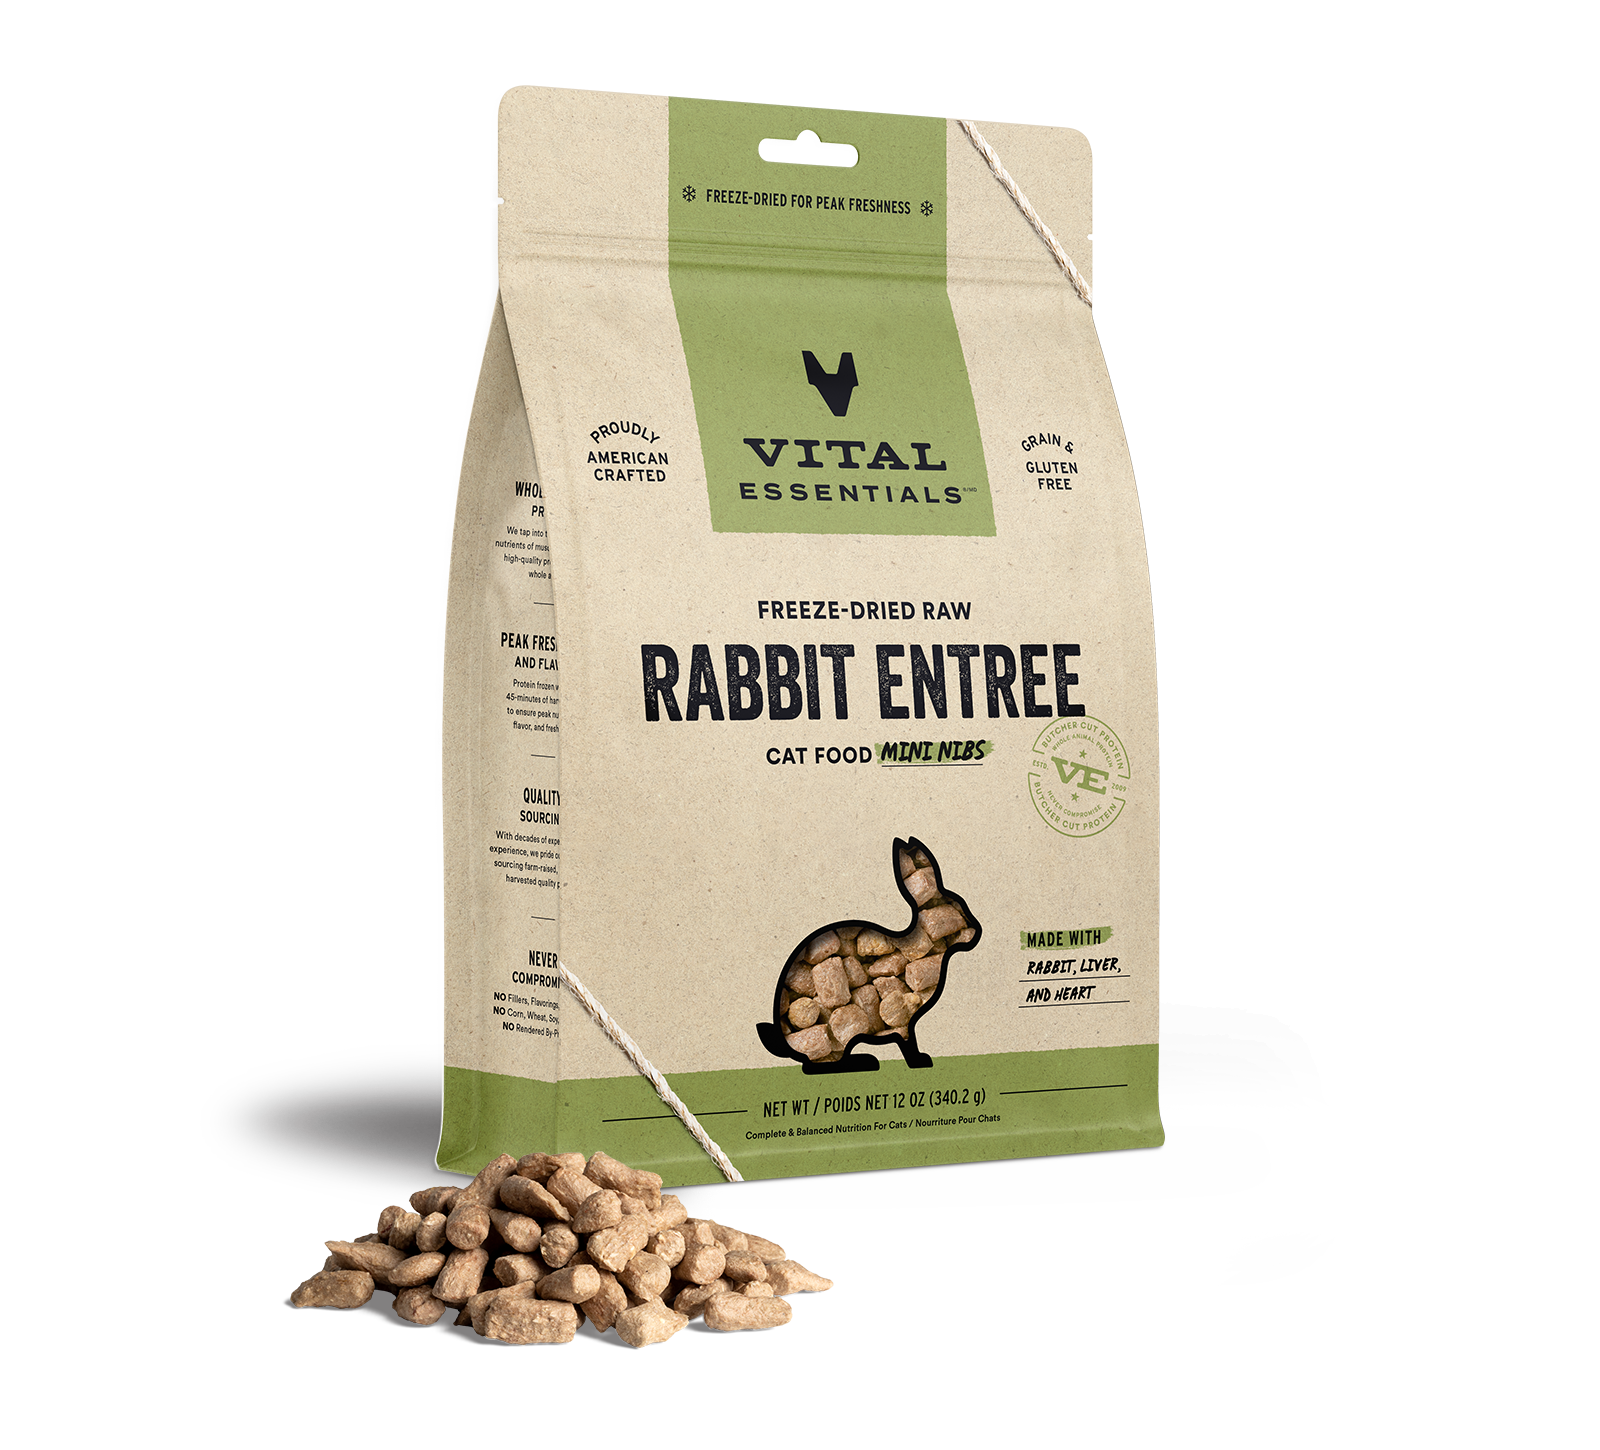 Vital Essentials Freeze-Dried Raw Rabbit Entree Cat Food Mini Nibs, 12 oz - Health/First Aid